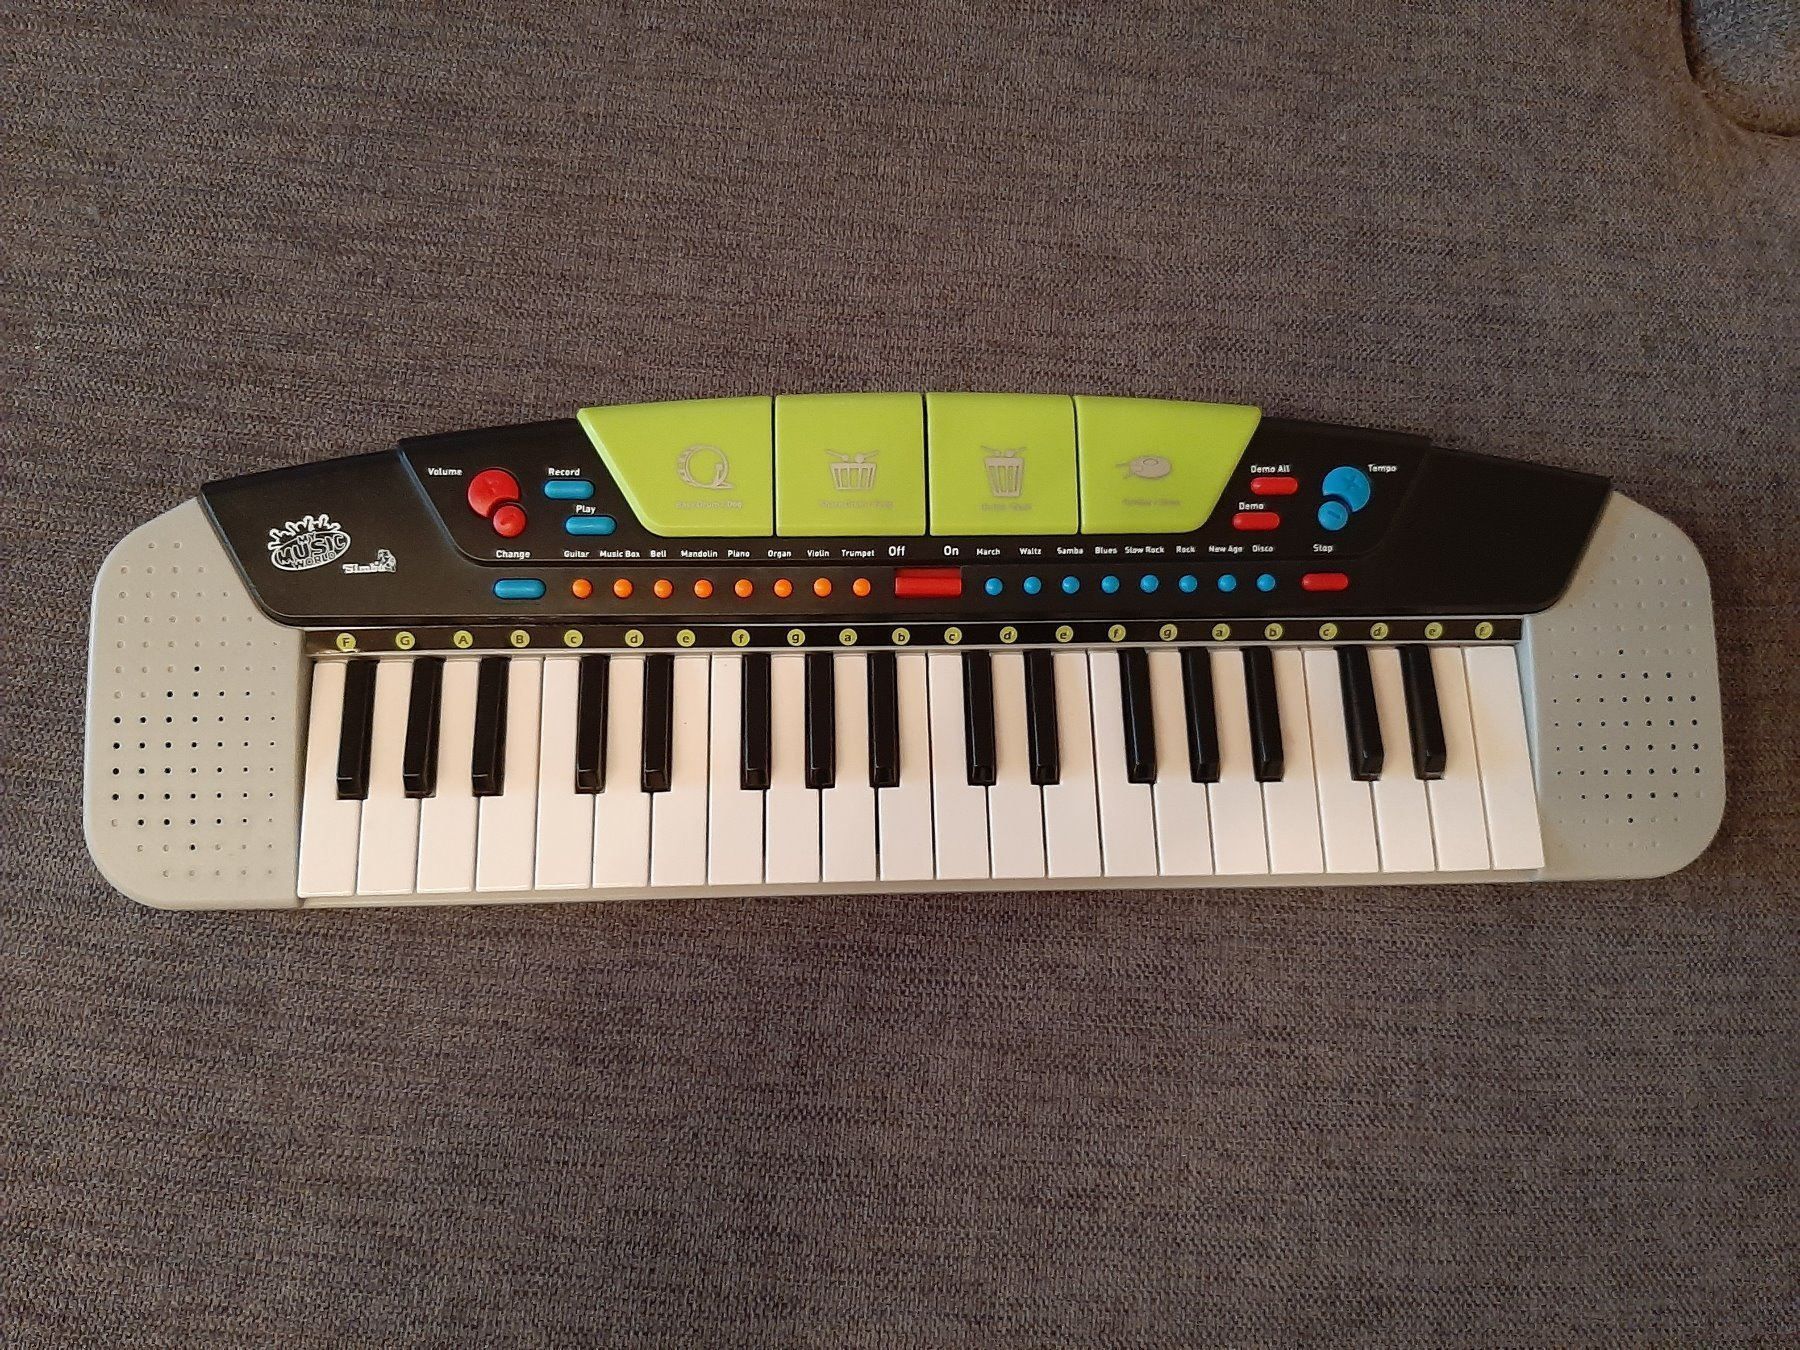 Kinder Klavier Blue 37 Tastatur E-Piano E-Keyboard Klavier f/ür Kinder ab 3 Jahren Geburtstag//Weihnachten Musikinstrumente Spielzeug